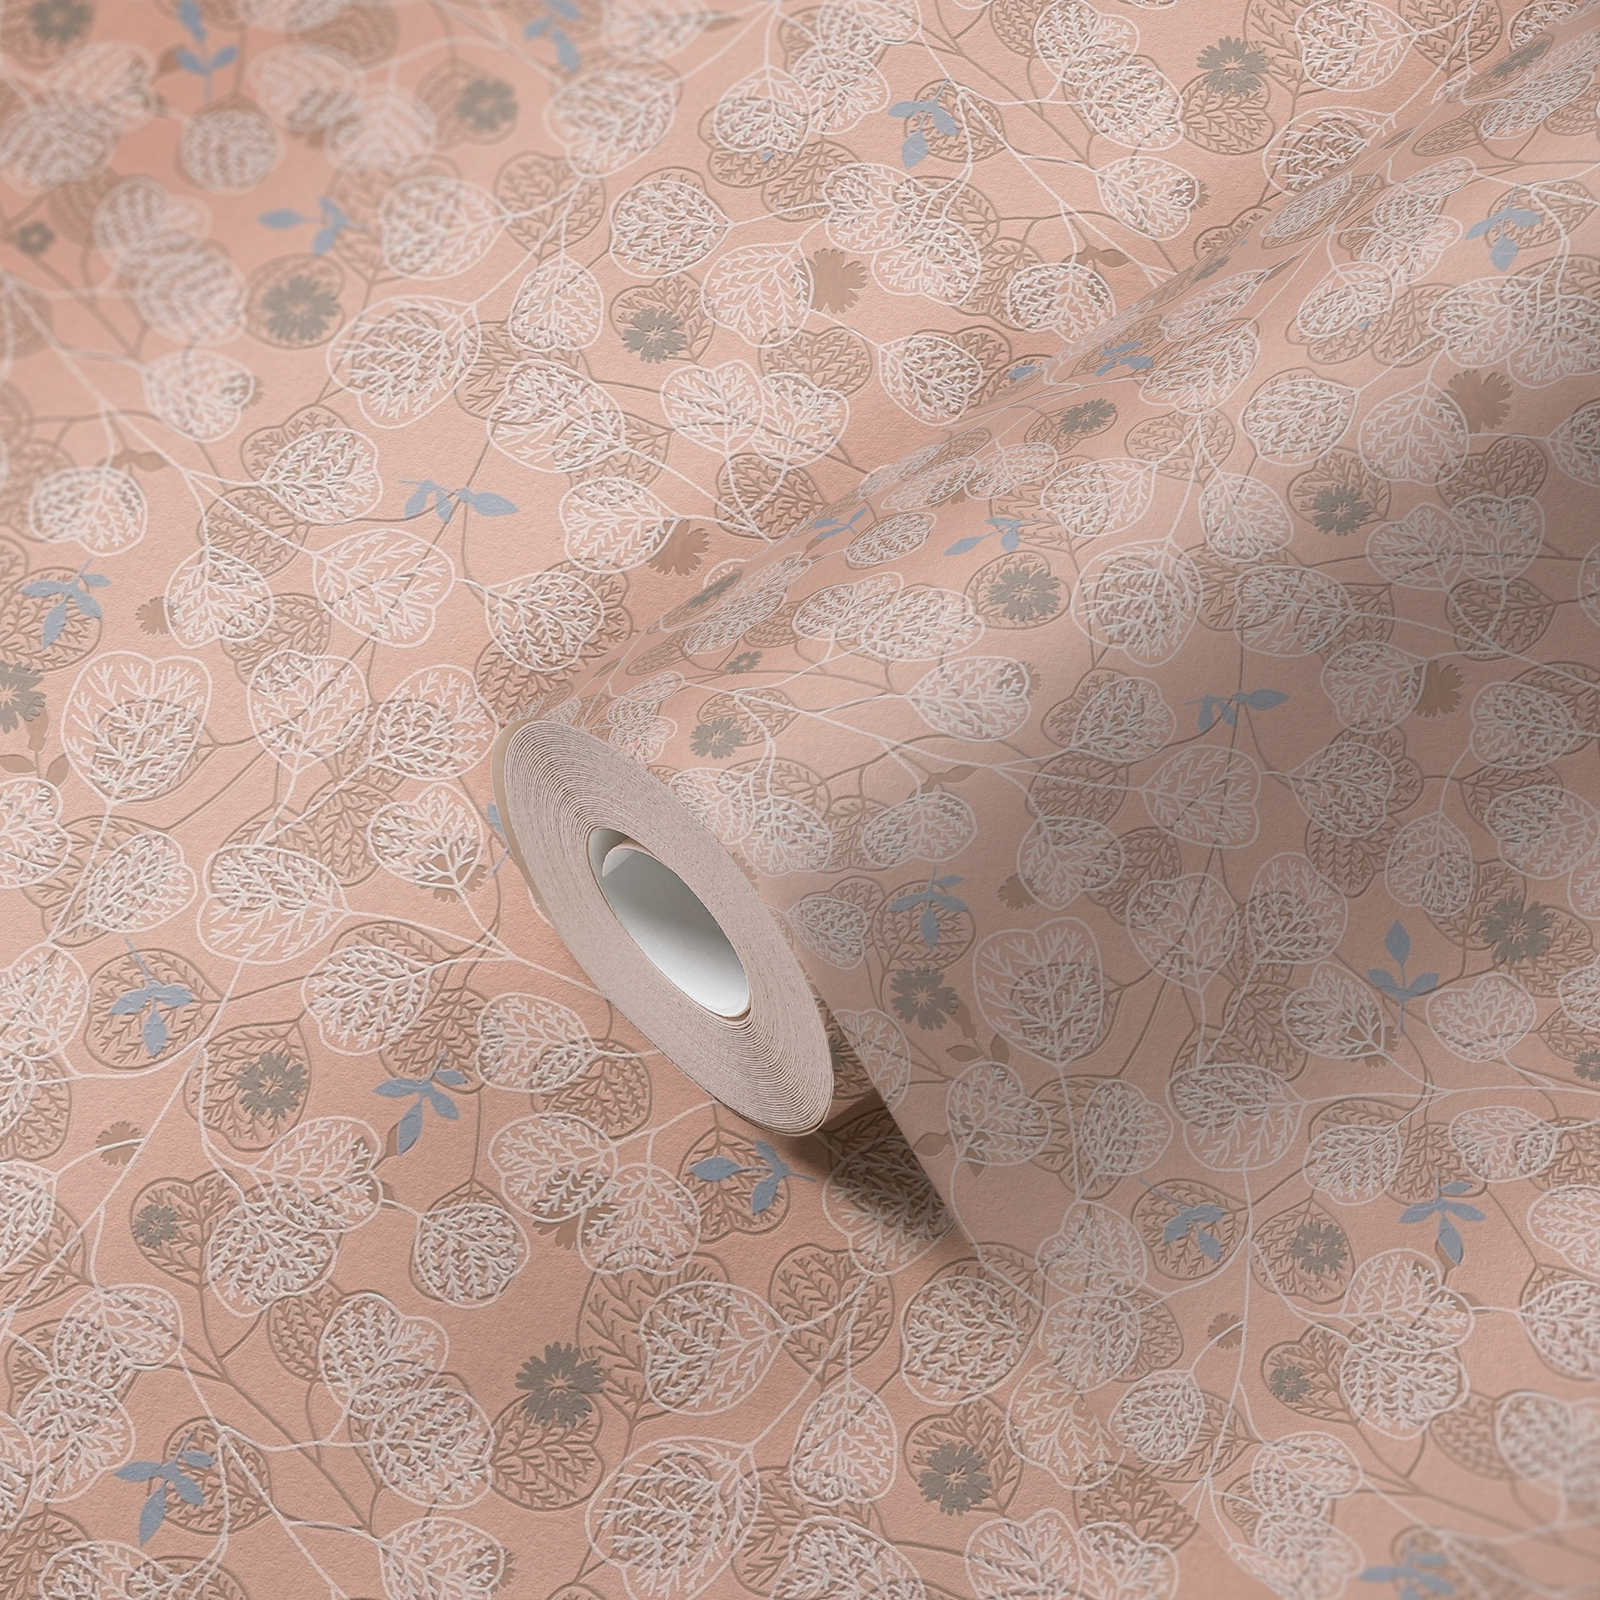             Papel pintado tejido-no tejido con motivos florales vintage - rosa, blanco, azul
        